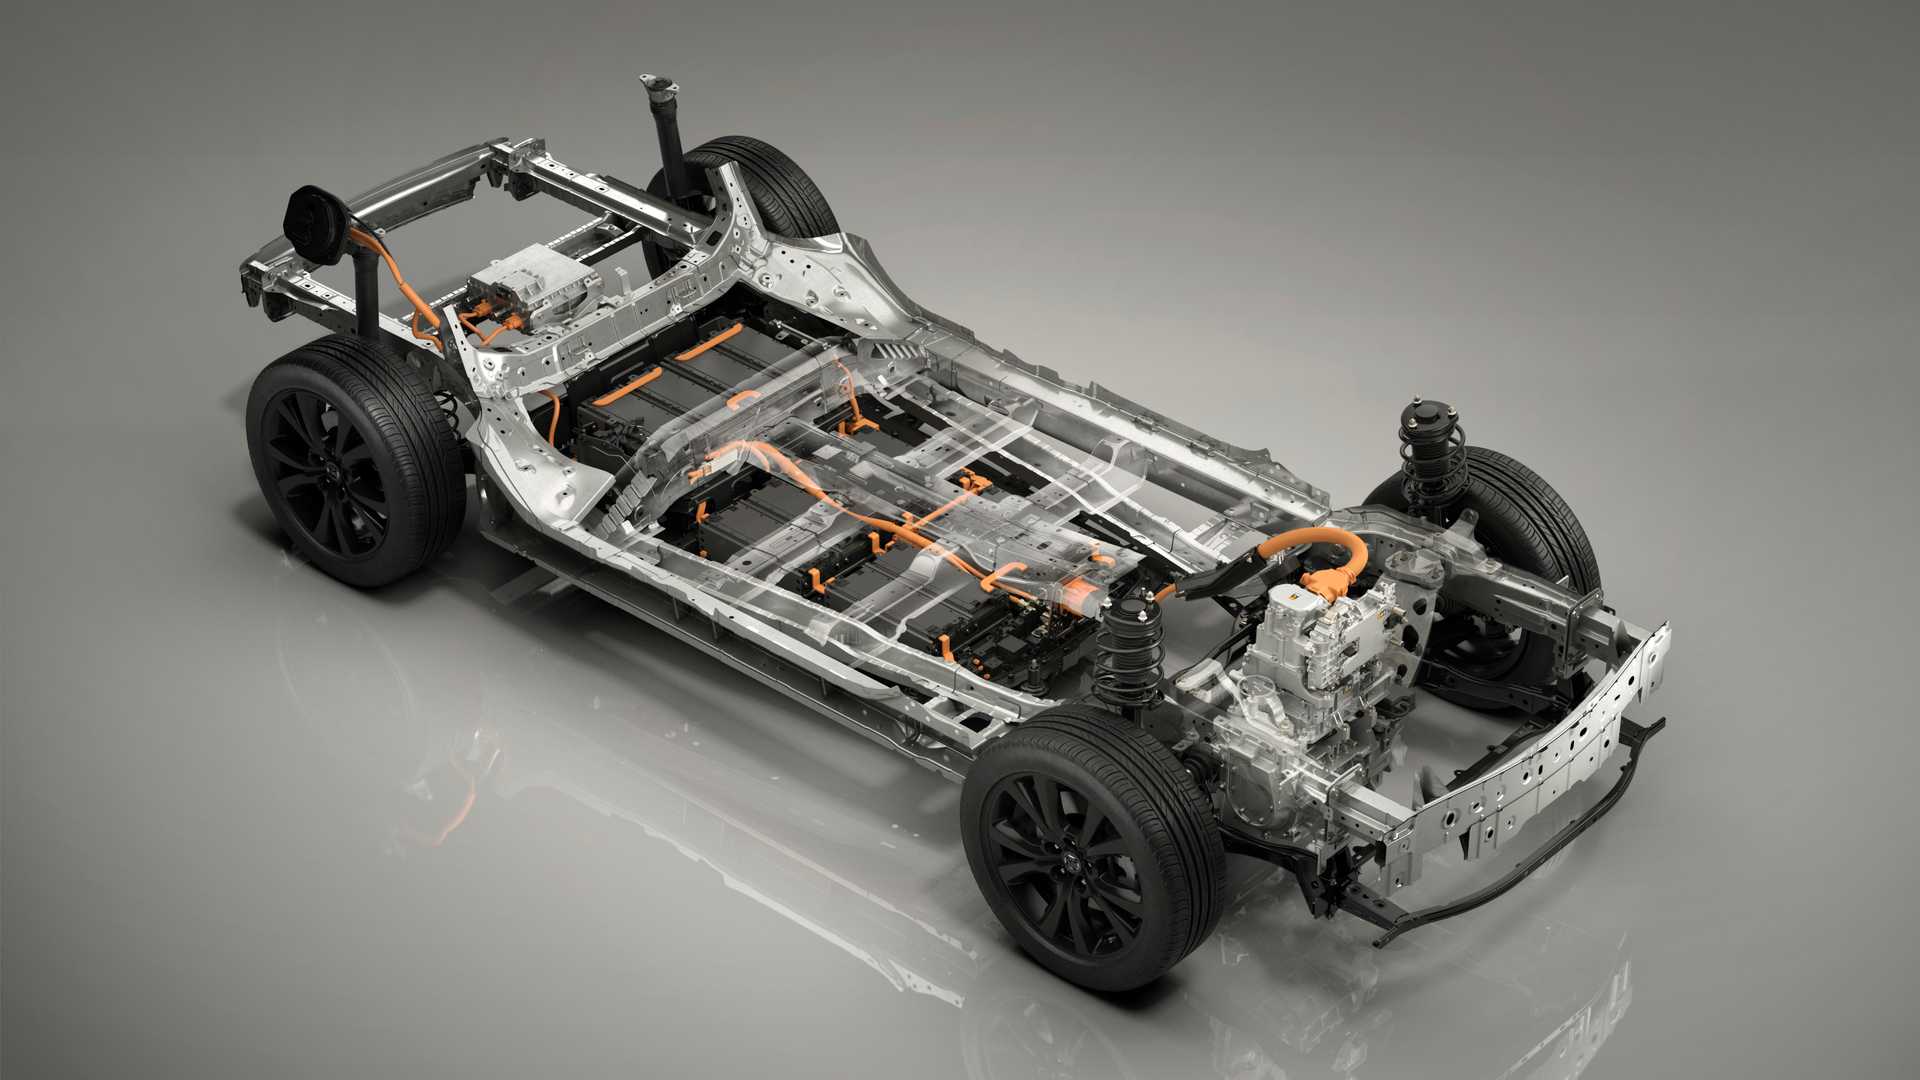 Niedługo Mazda zaprezentuje pierwszy model elektryczny. Co